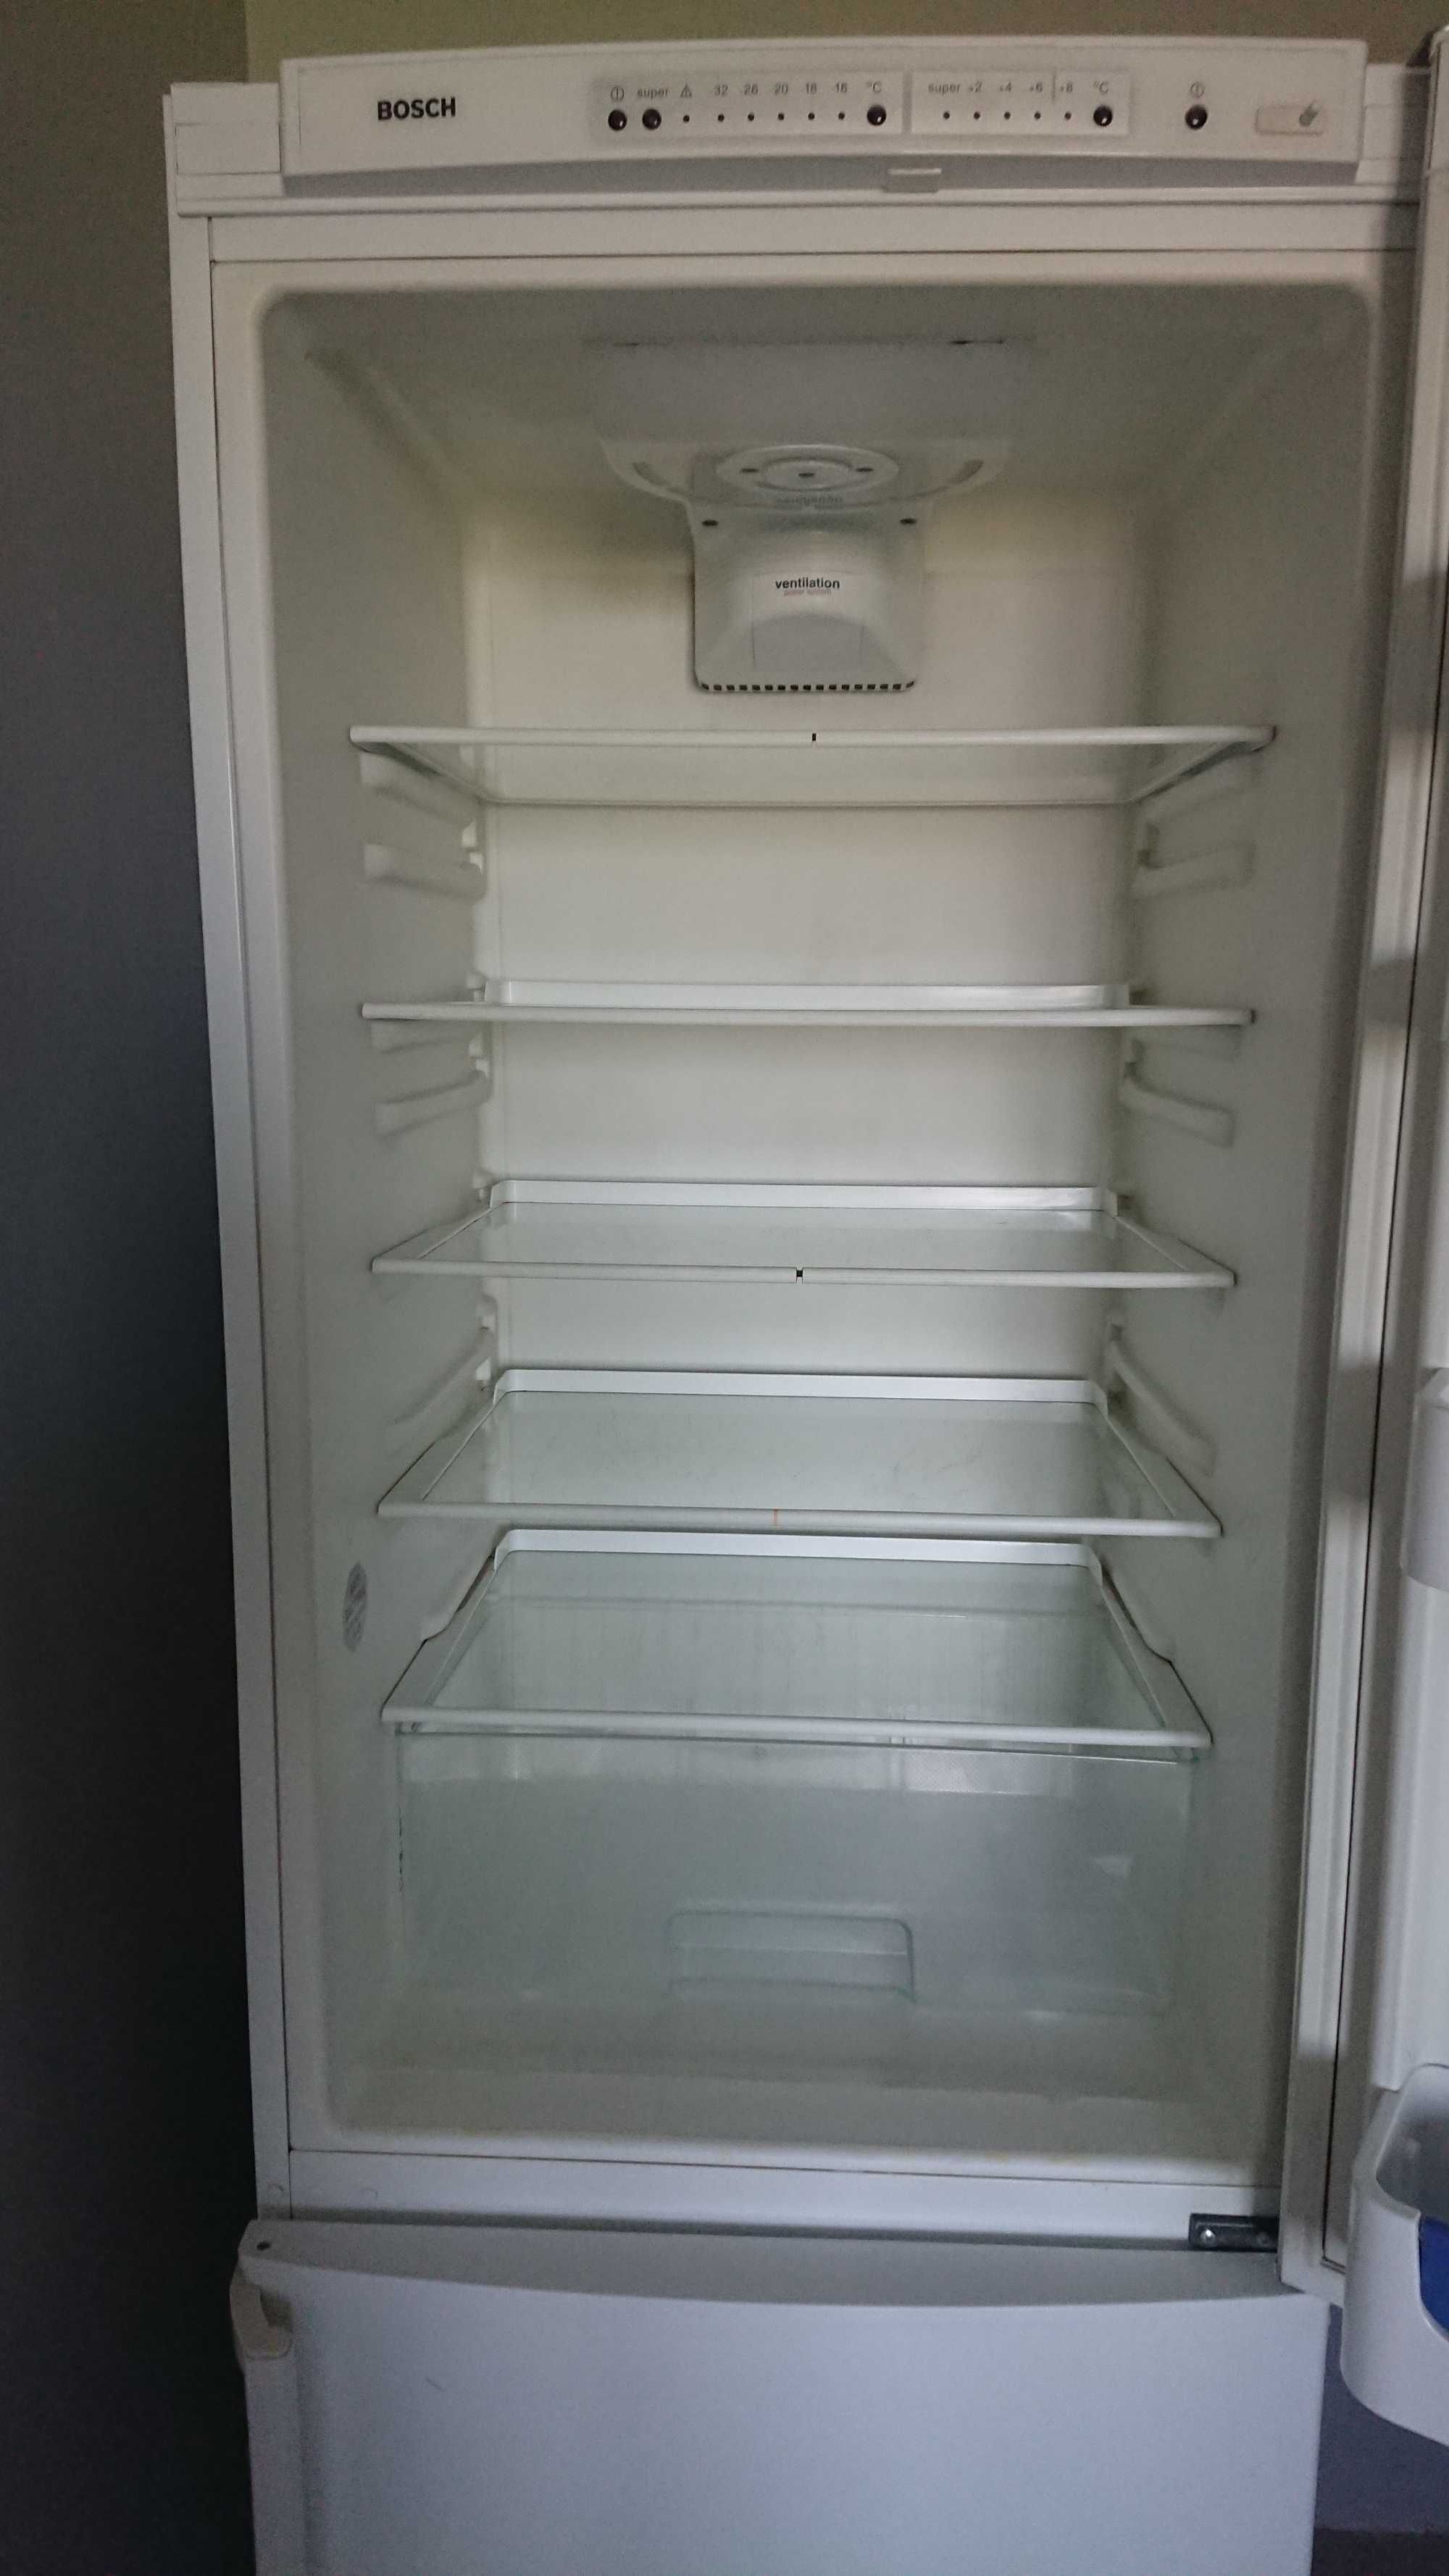 Продам холодильник ВОSCH б/у